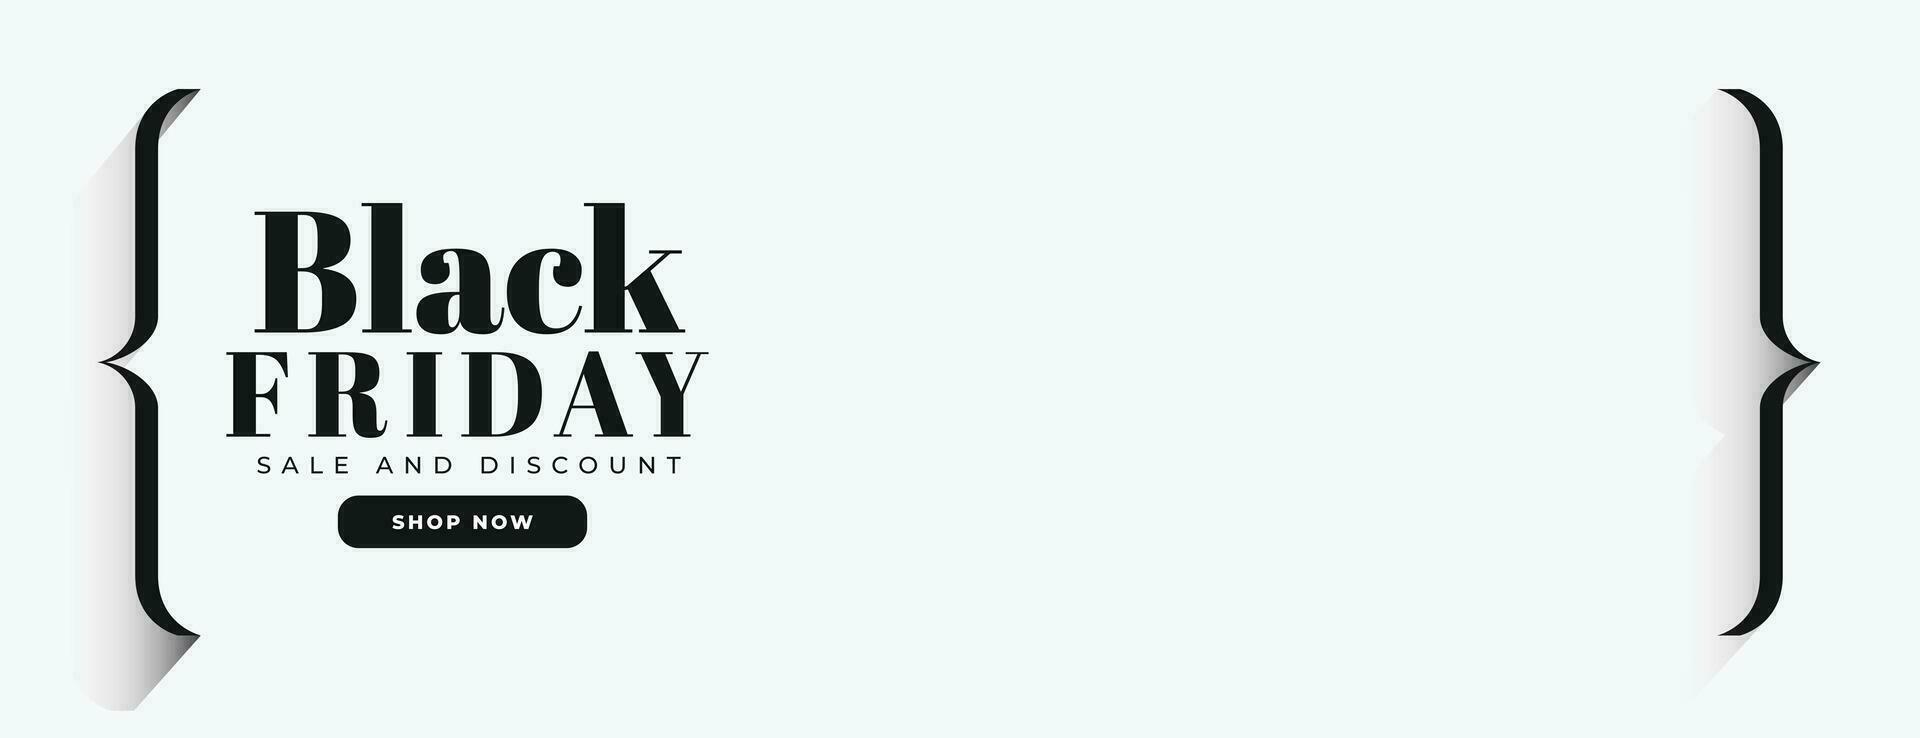 minimalista estilo negro viernes rebaja clásico amplio bandera vector